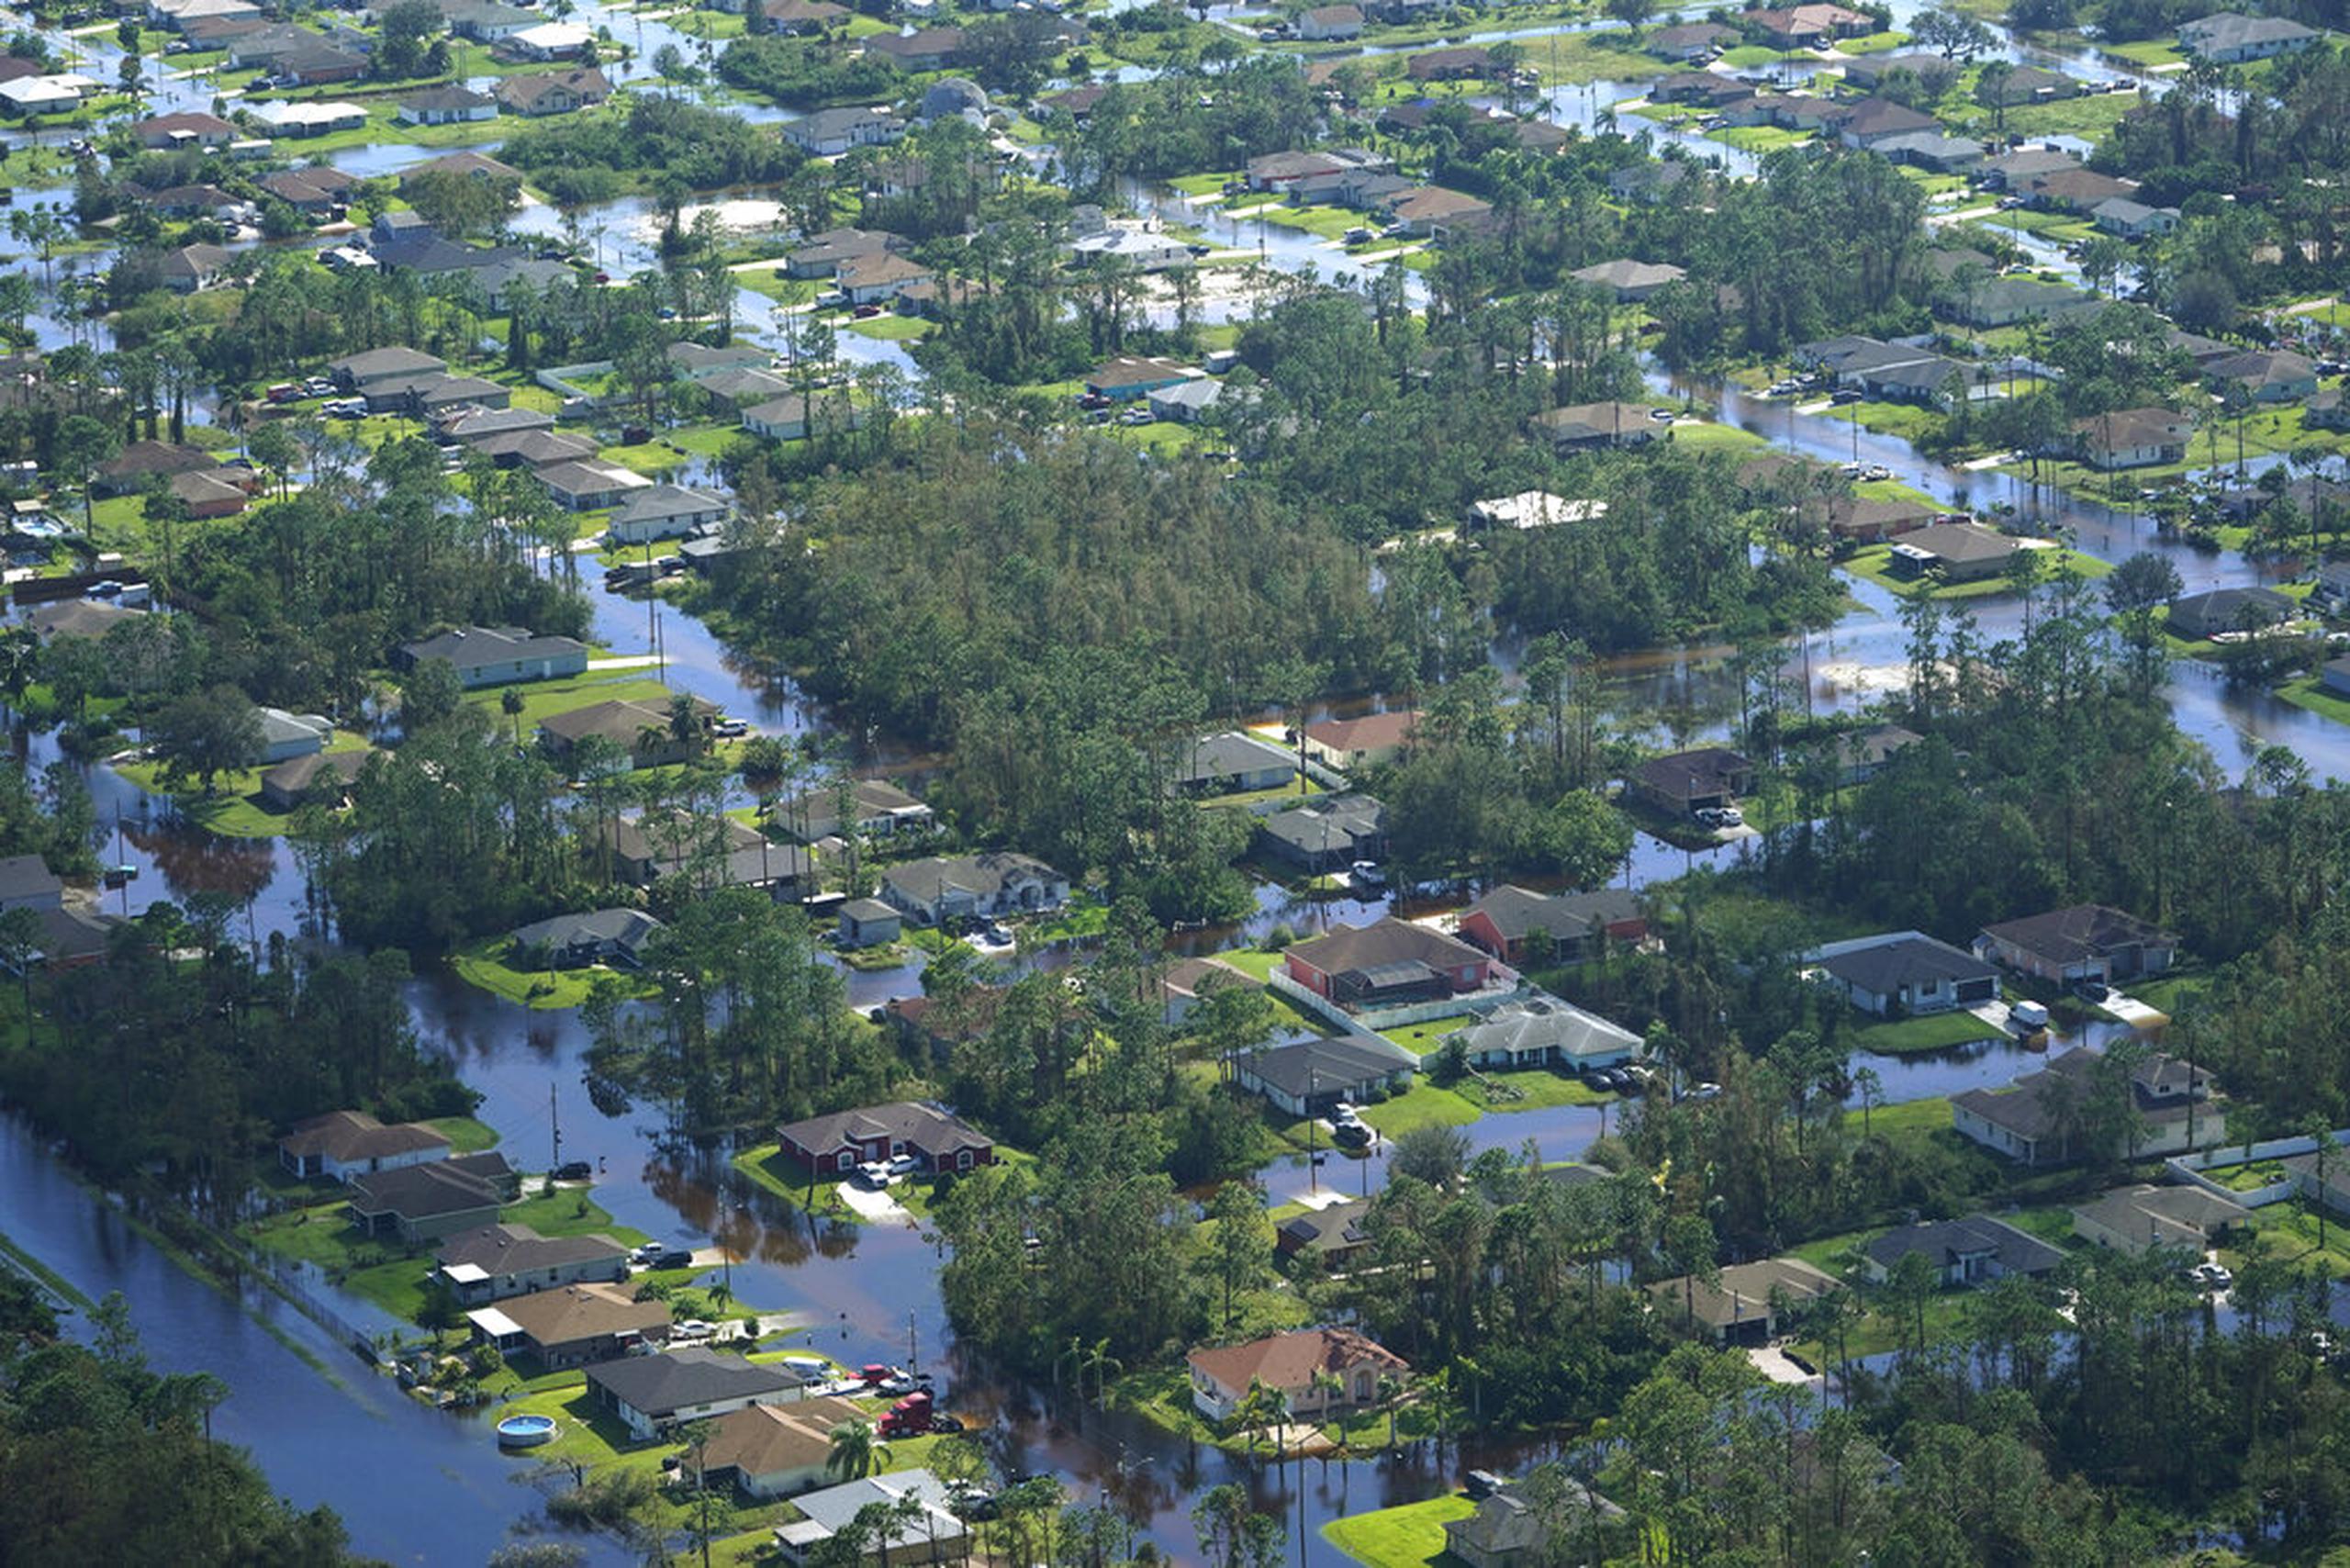 Casas rodeadas por las inundaciones causadas por el huracán Ian, el 29 de septiembre de 2022, en Fort Myers, Florida.